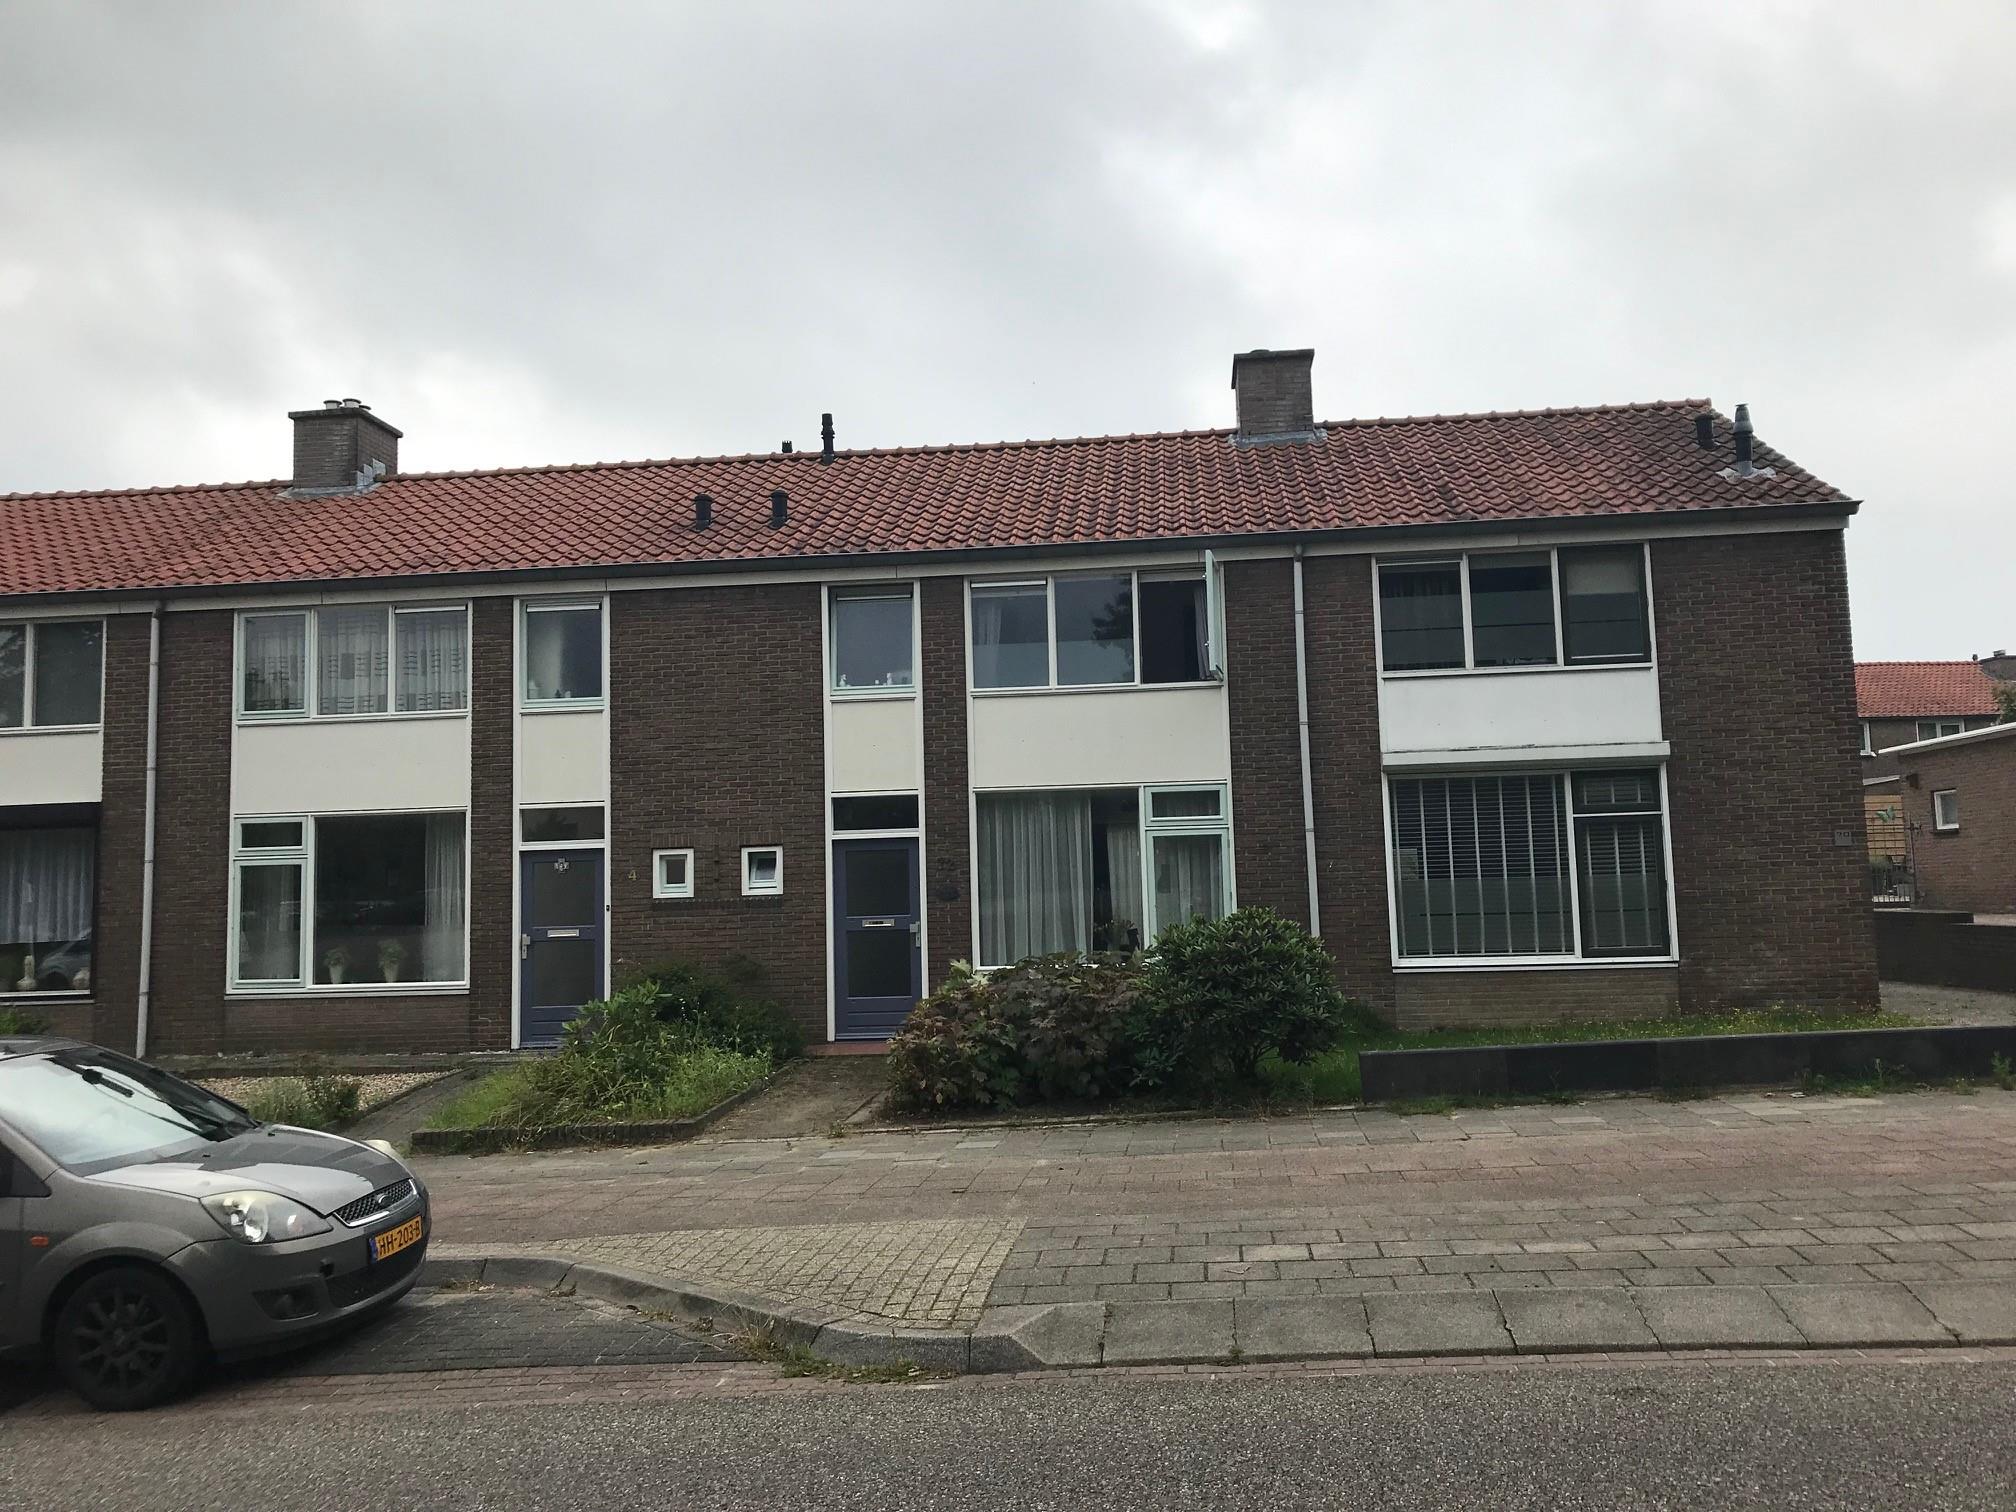 Cranenburgsestraat 72, 6561 AP Groesbeek, Nederland